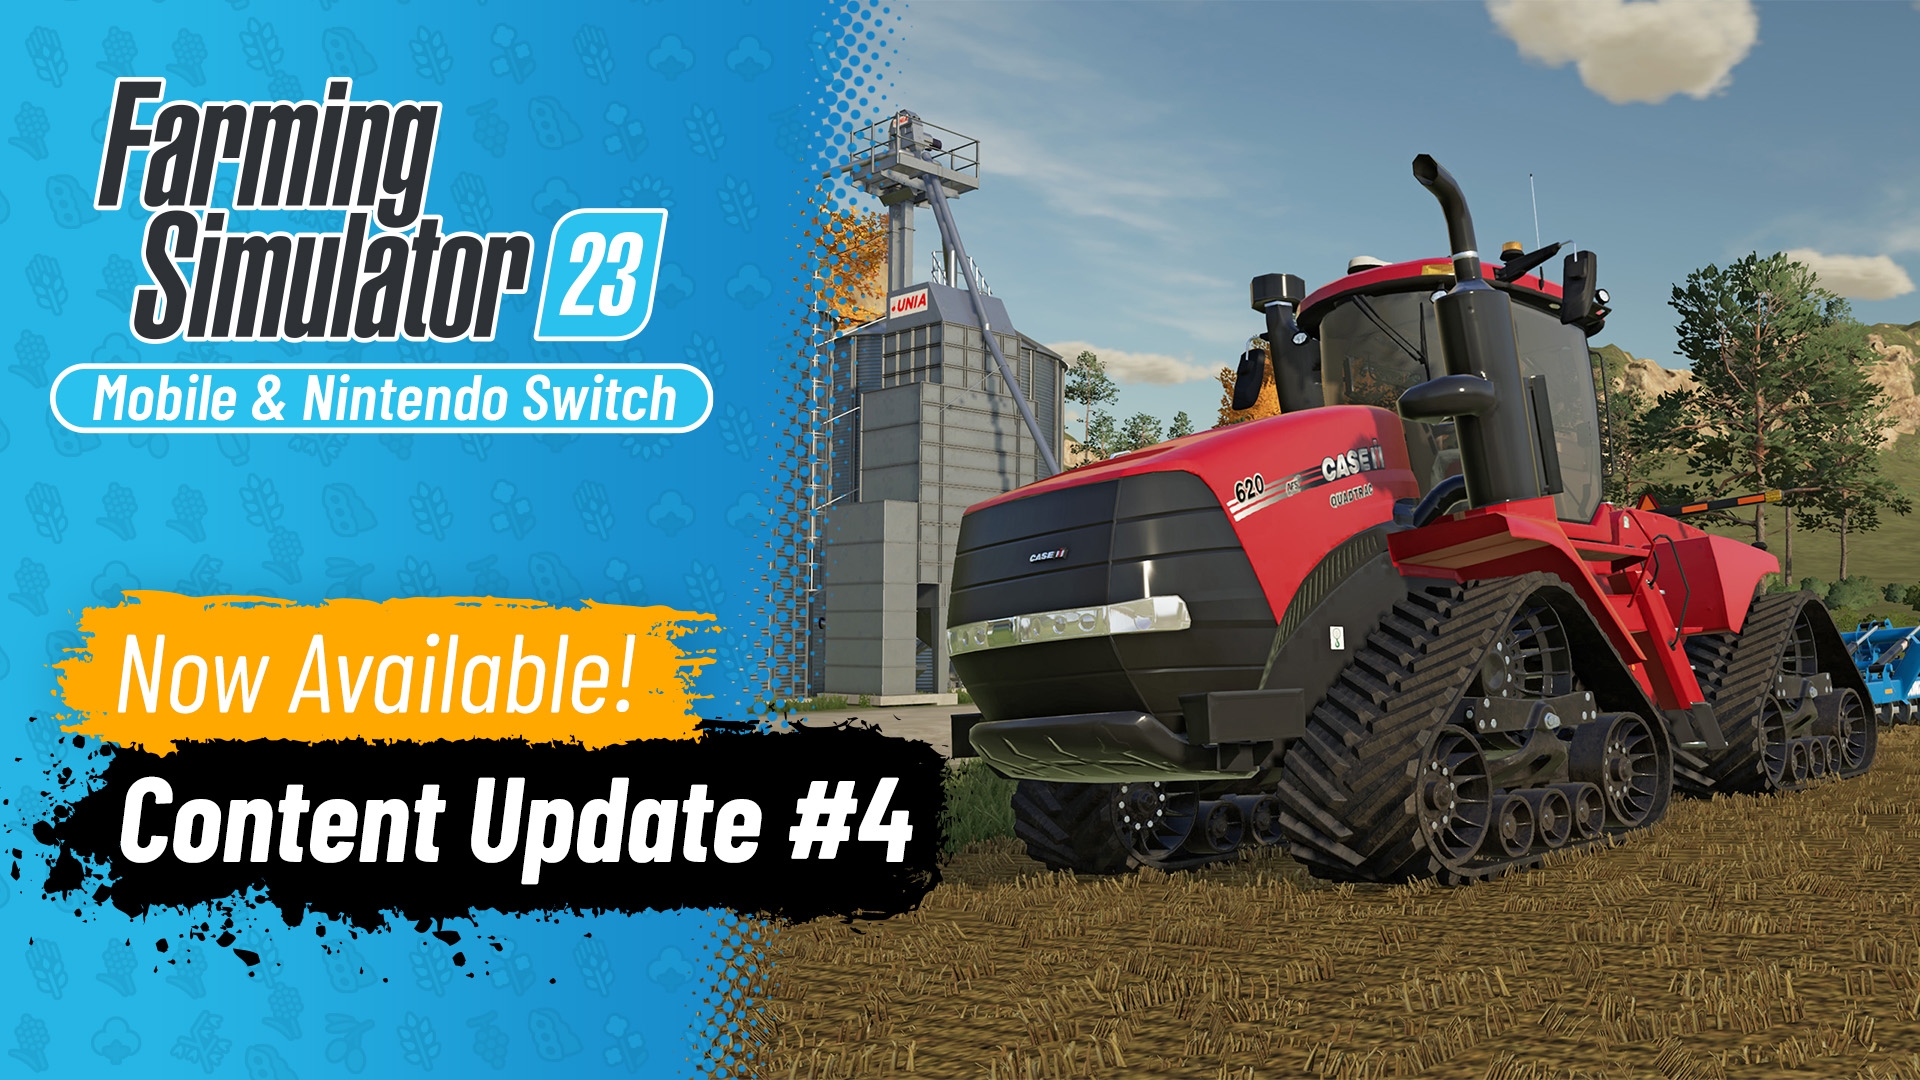 Nuovi macchinari gratuiti in Farming Simulator 23